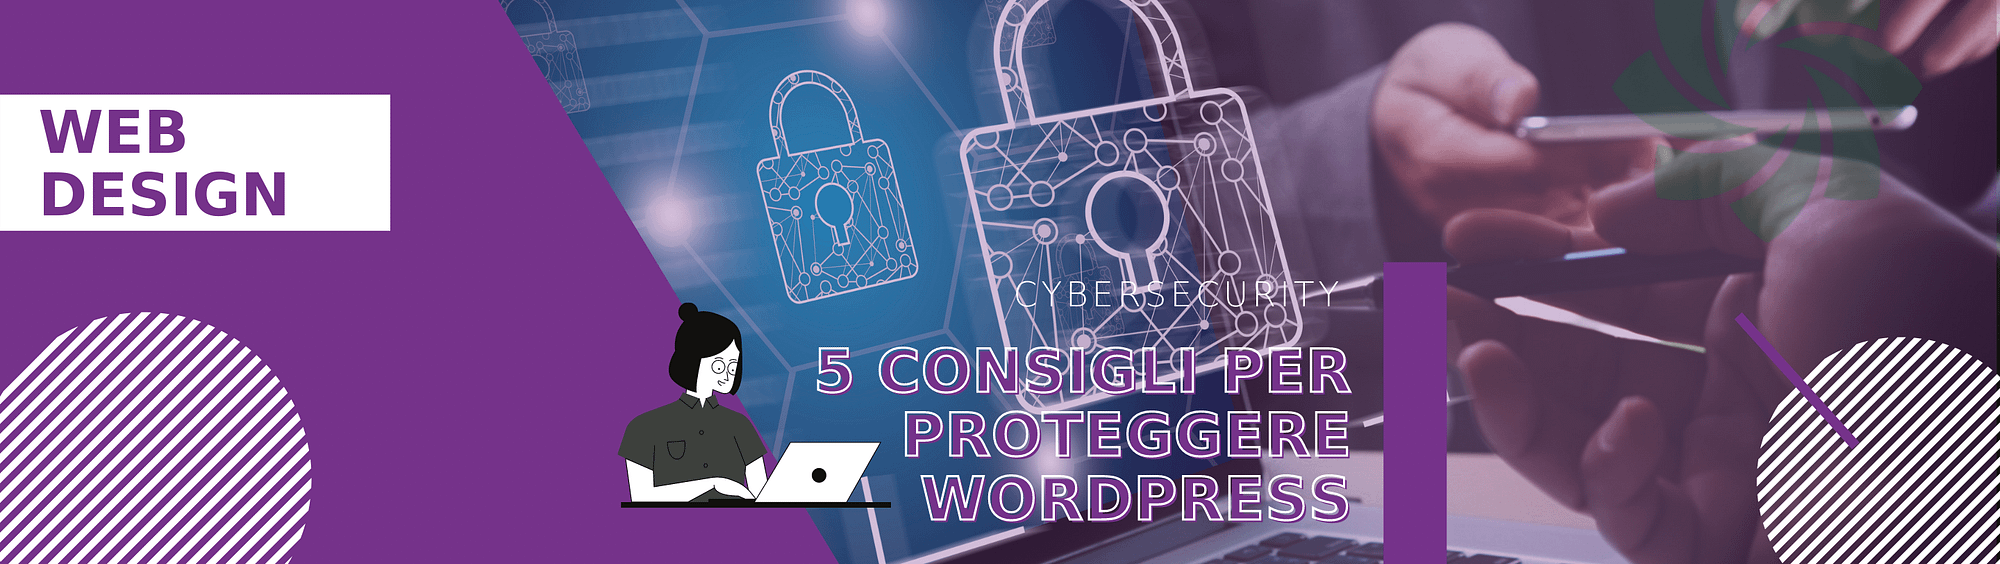 proteggere-wordpress-consigli